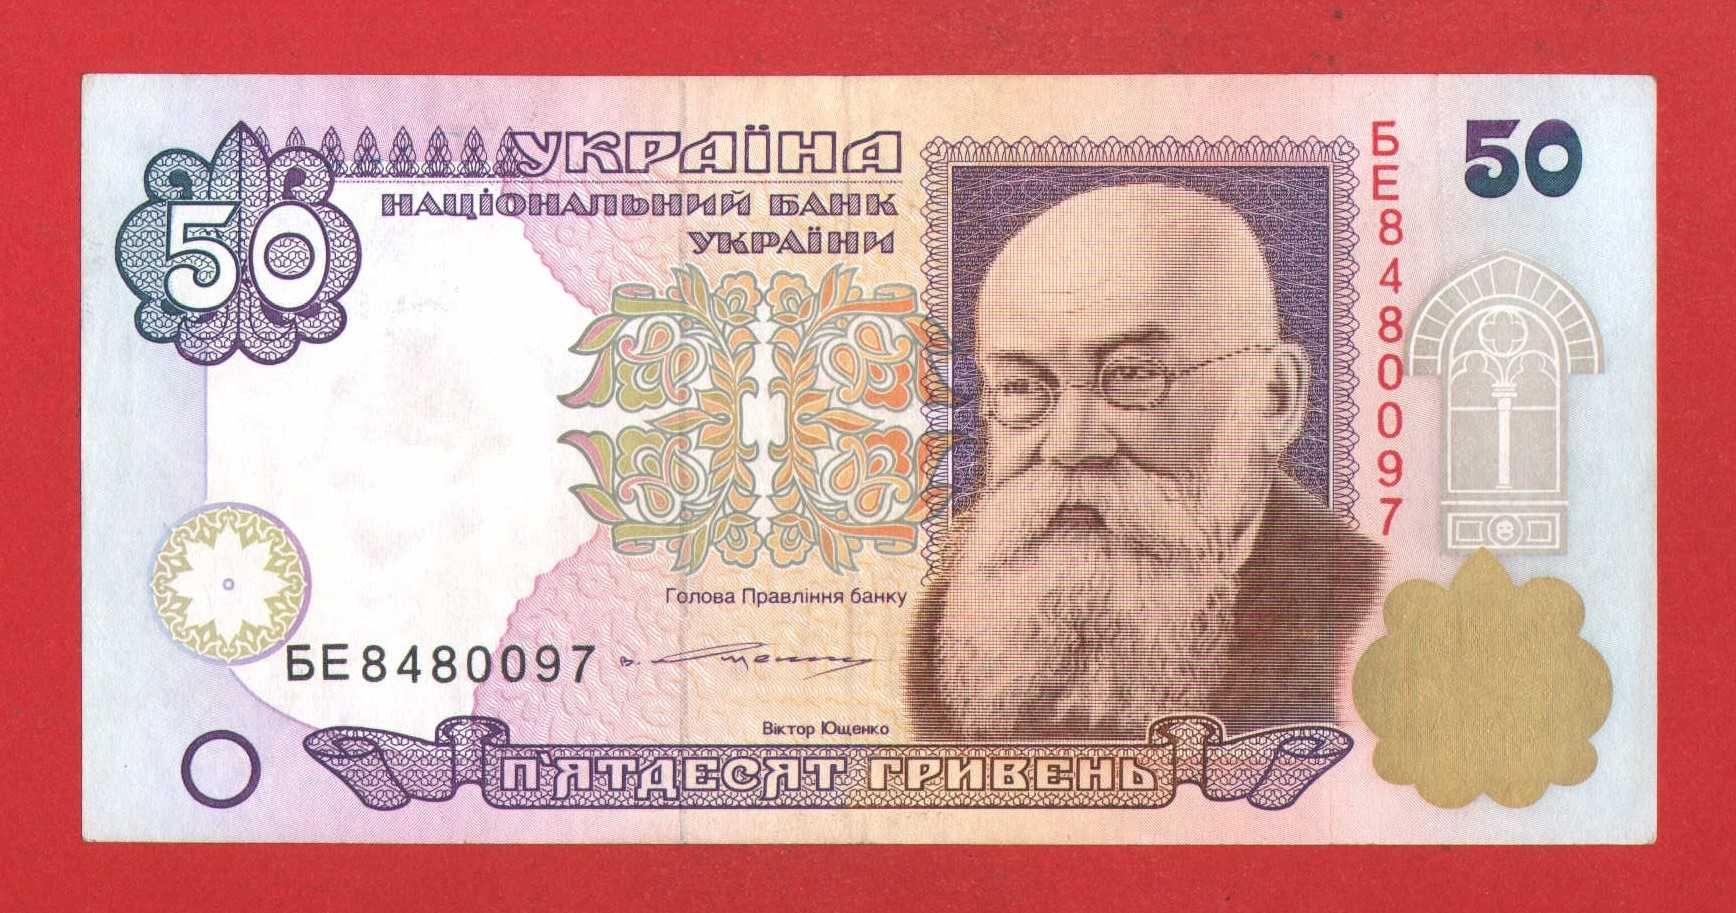 Банкнота 50 гривень Ющенко з номером БЕ 8480097 старого зразка